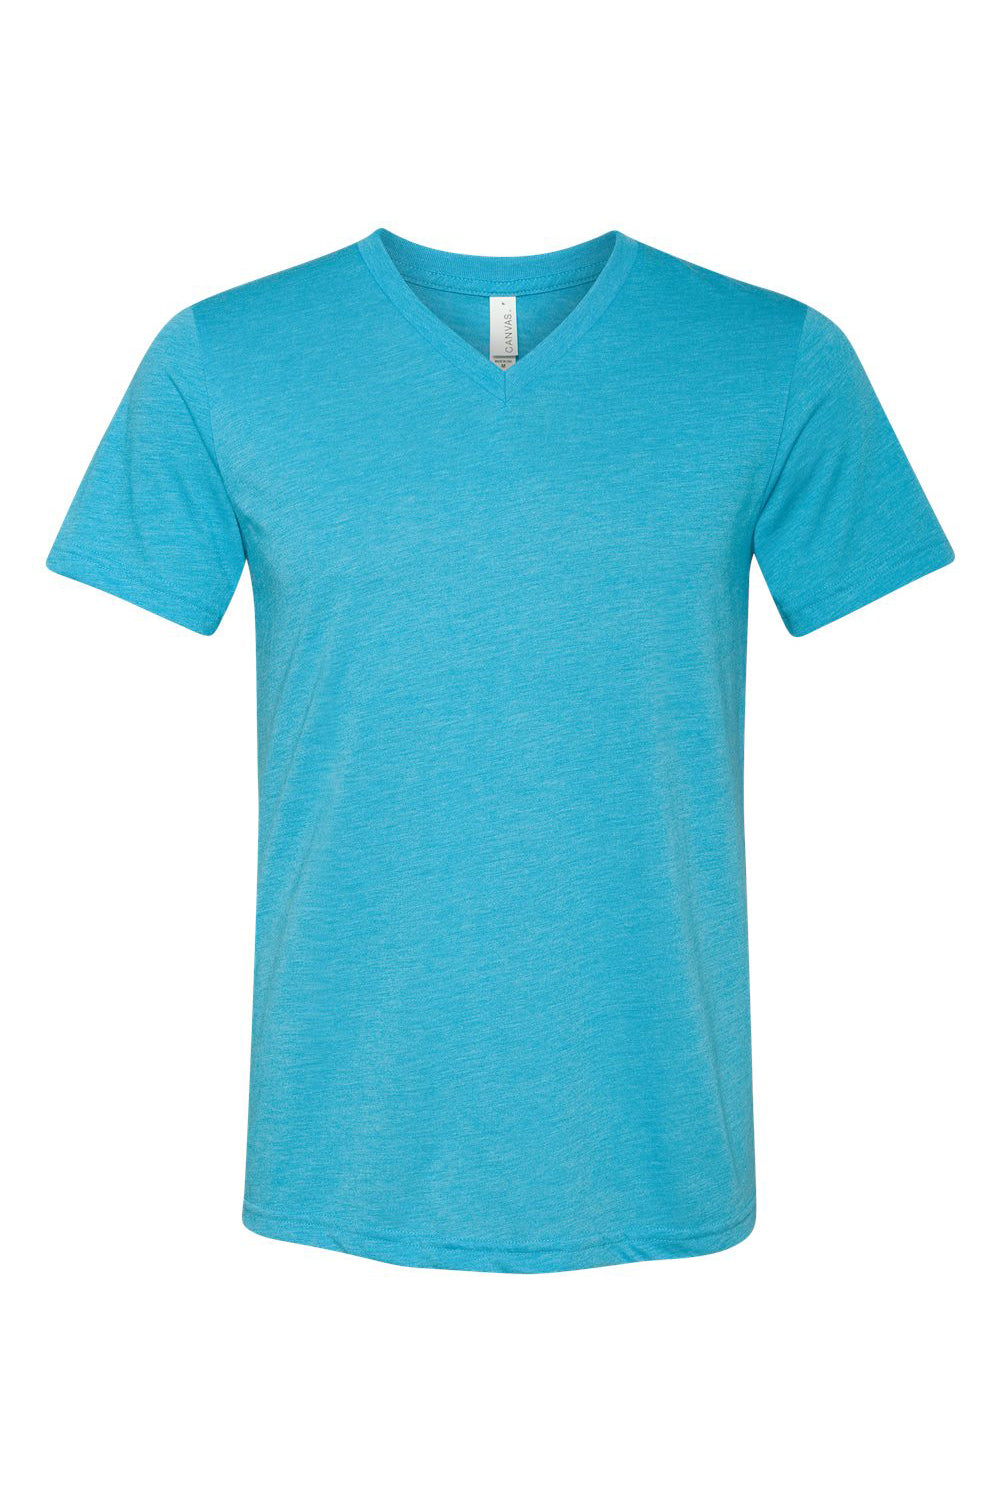 Bella + Canvas BC3415/3415C/3415 Mens Short Sleeve V-Neck T-Shirt Aqua Blue Flat Front